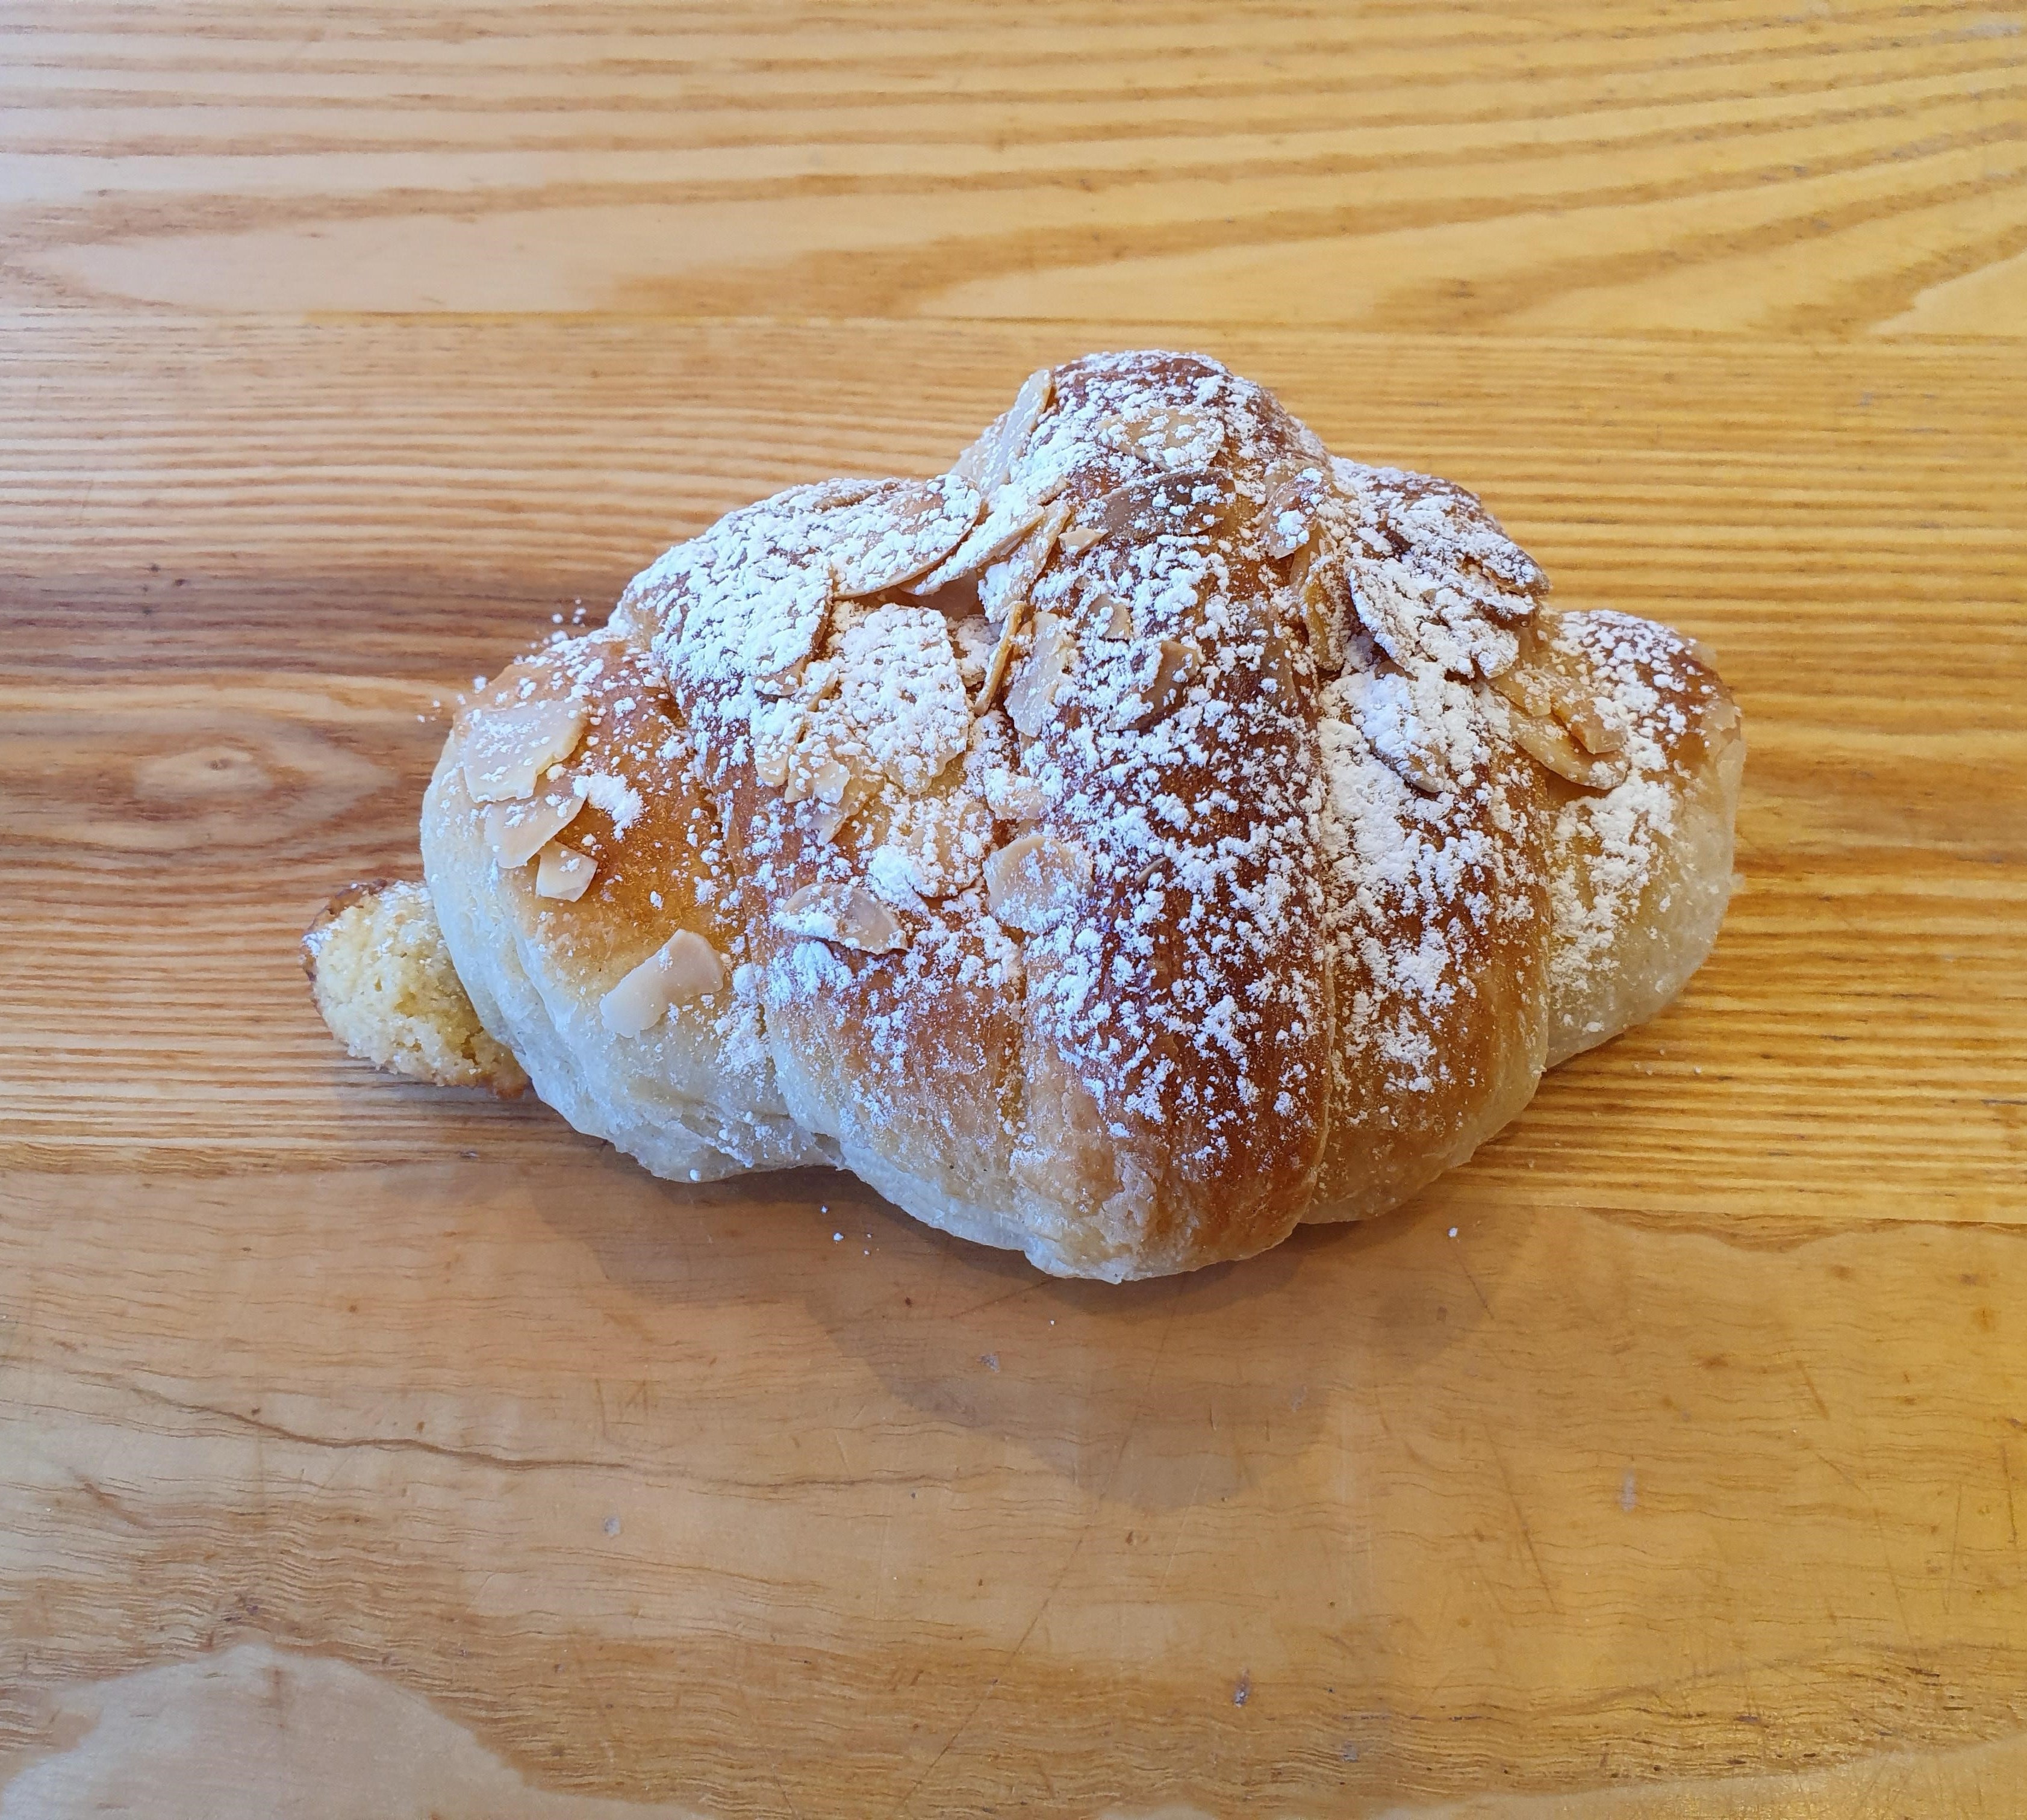 Croissant - Almond